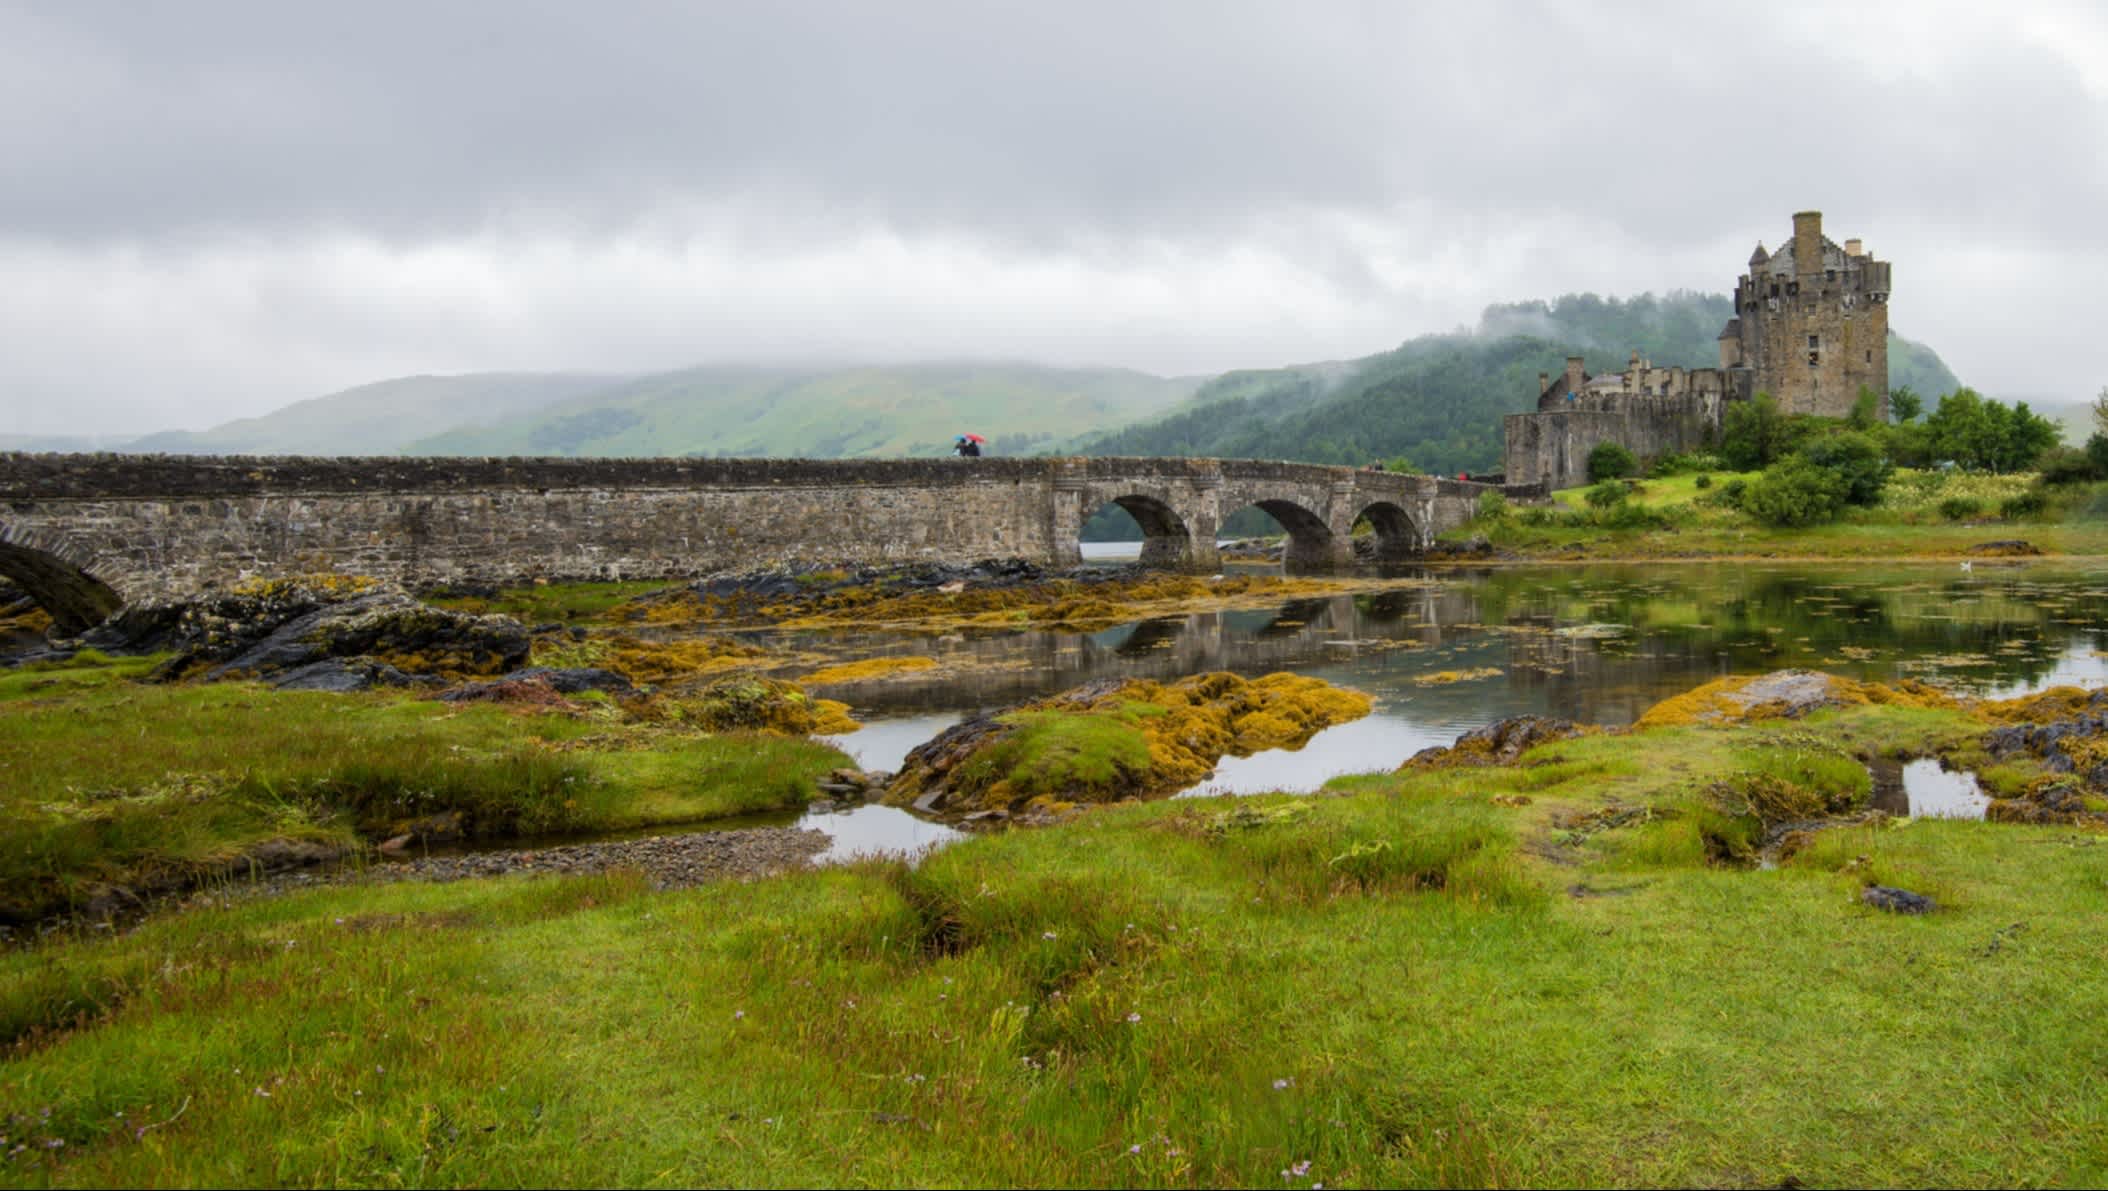 Blick auf das geheimnisvolle Schloss Eilean Donan in Schottland.